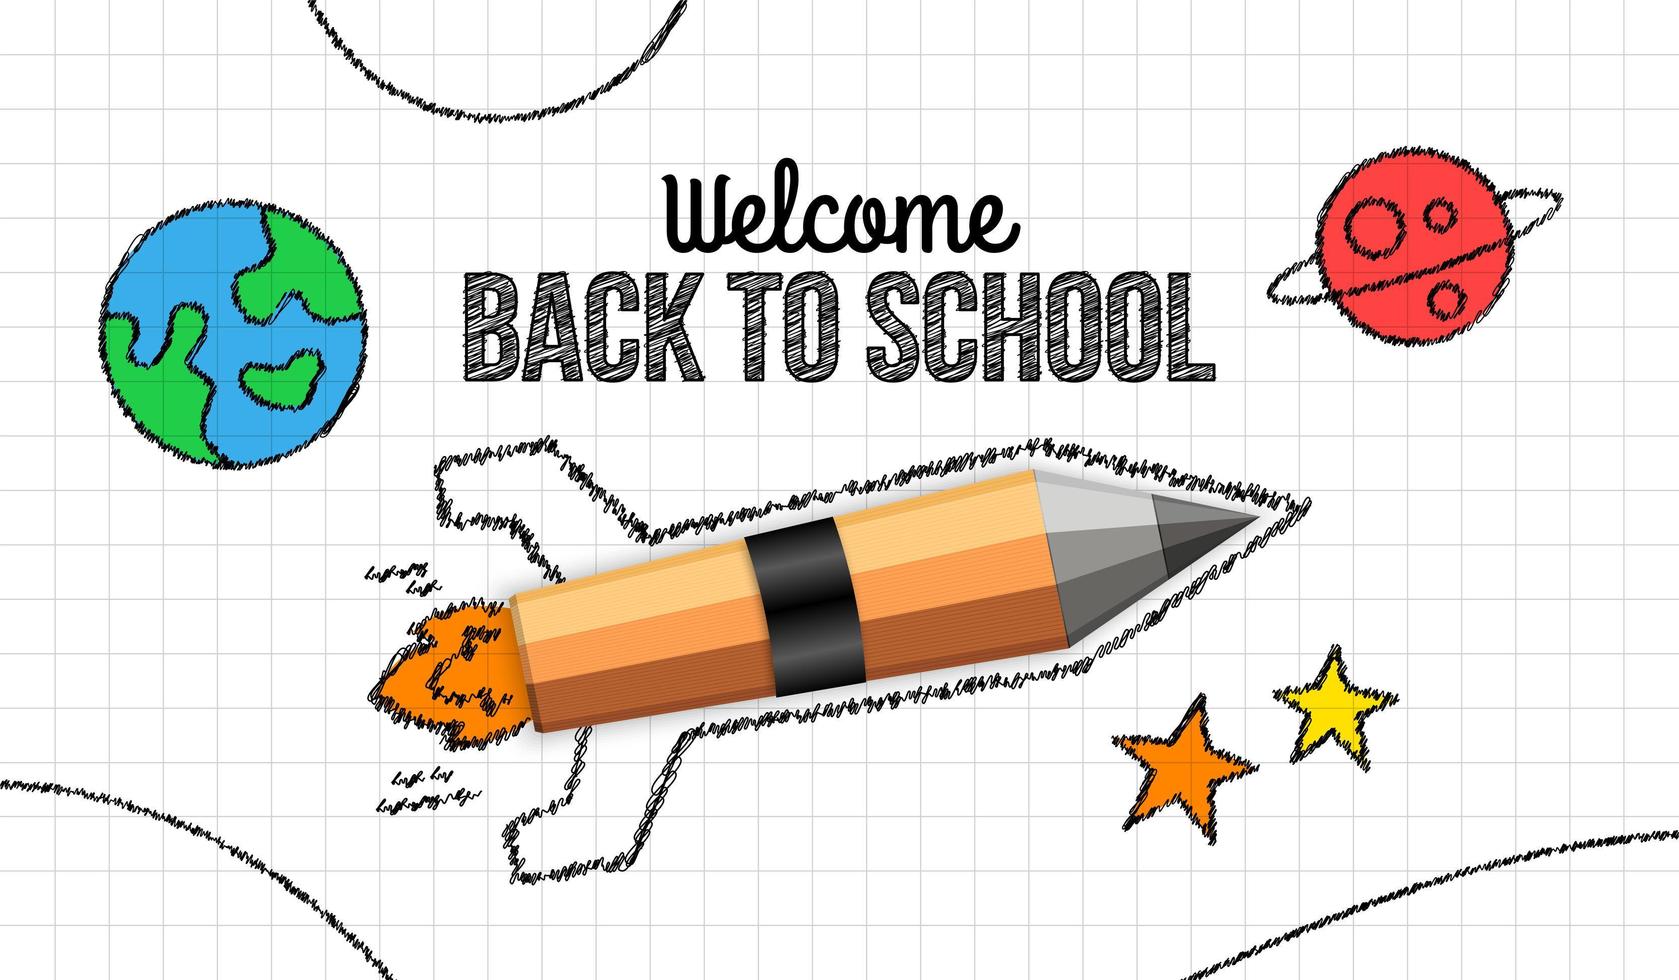 lancio realistico di un razzo a matita su carta bianca, bentornato a scuola doodle background vettore